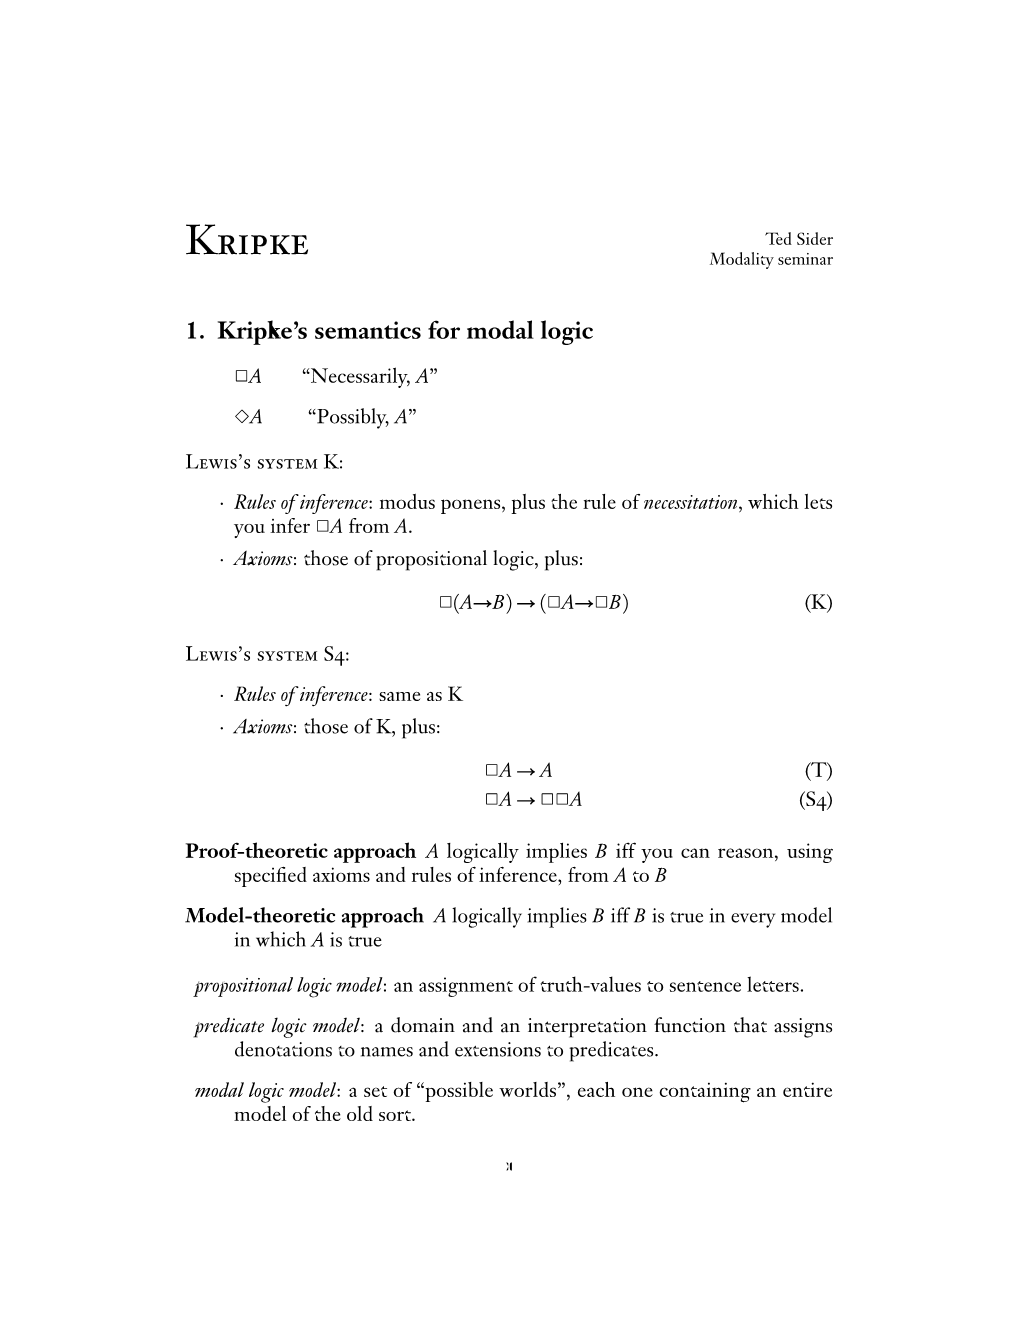 1. Kripke's Semantics for Modal Logic